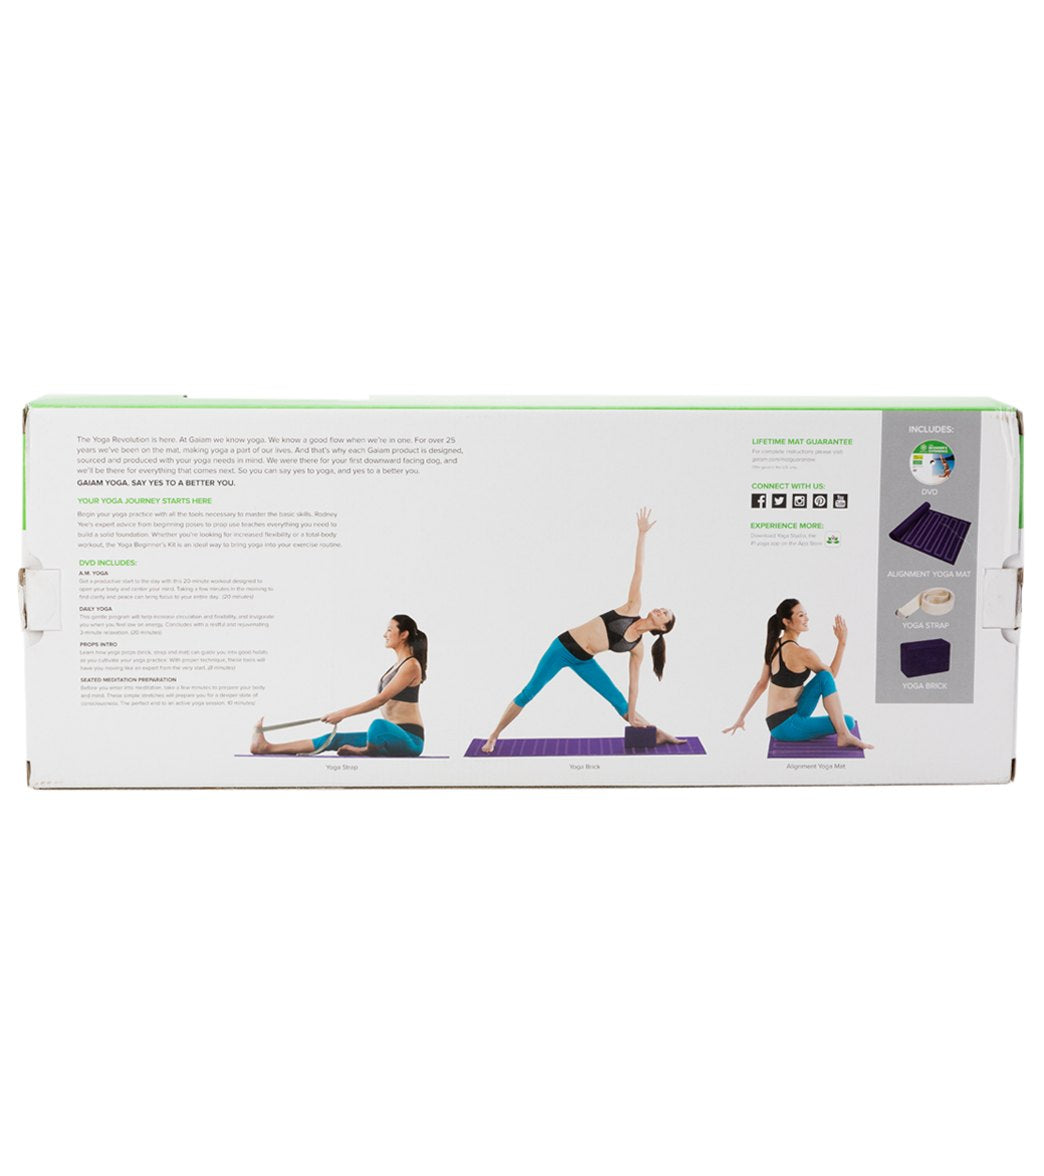 Gaiam Yoga Beginners Kit